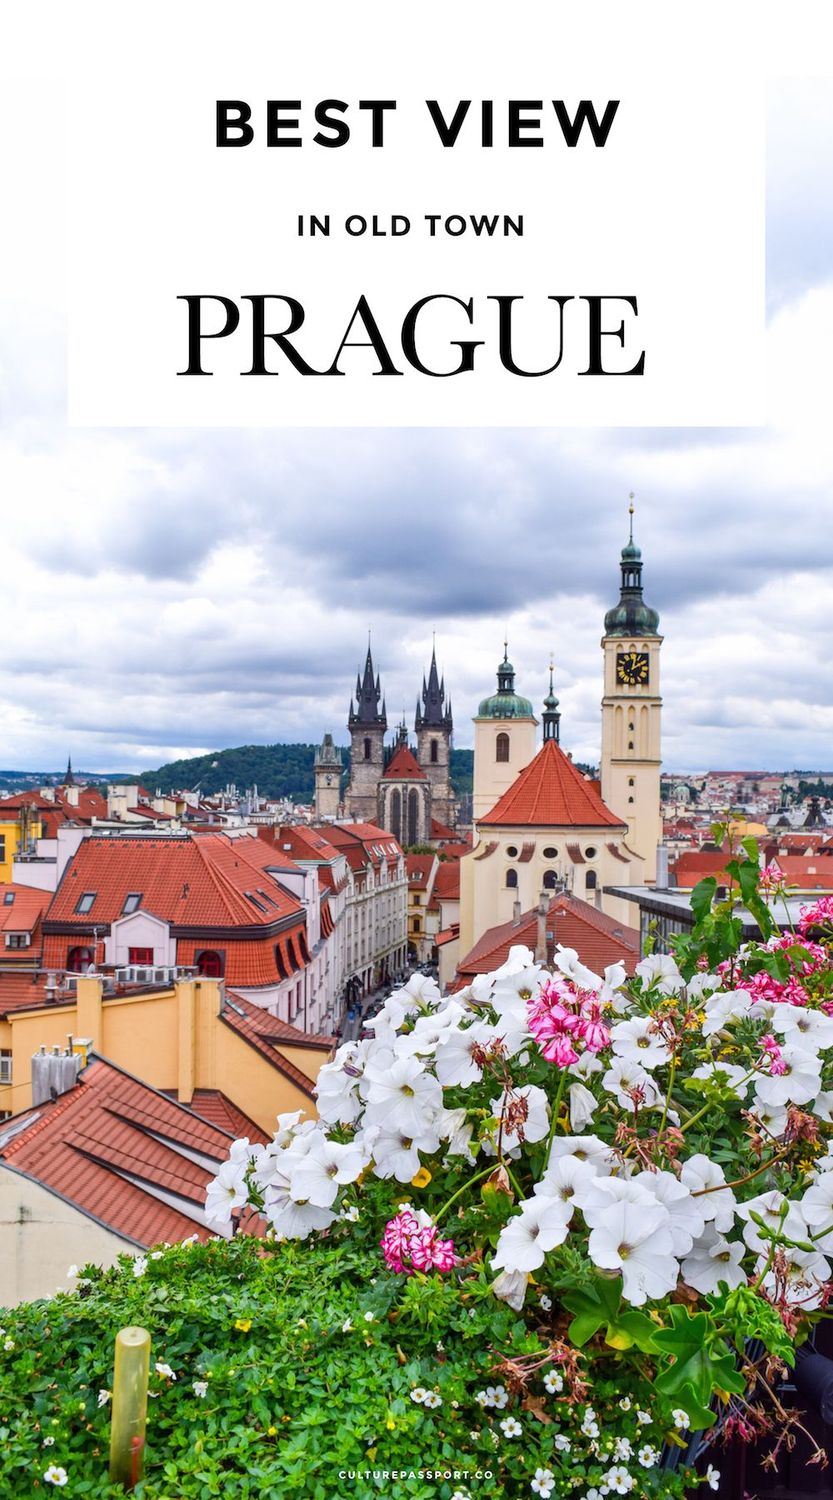 Best View in Prague, Prague Travel Guide, Old Town Prague, Best Photos in Prague